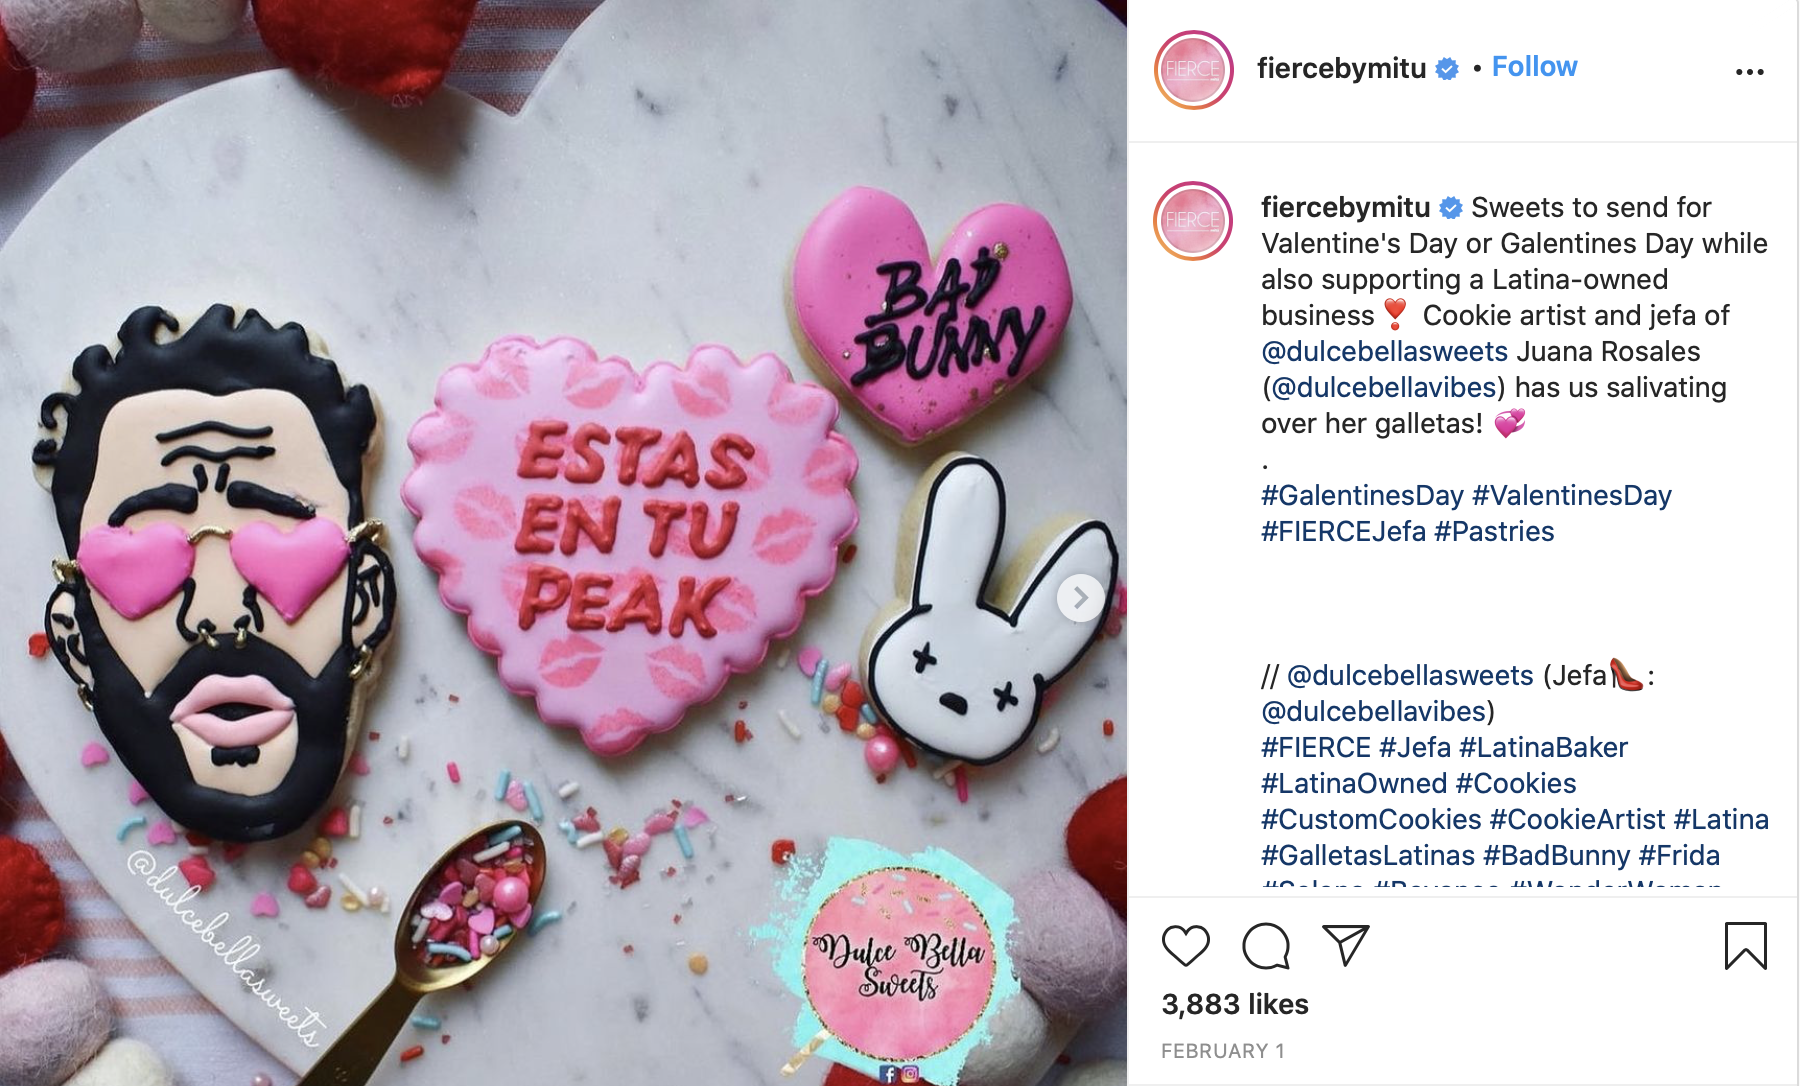  Foto del página de Instagram de FIERCE by mitú, cuando enseñaron las galletas de Rosales.&nbsp;     